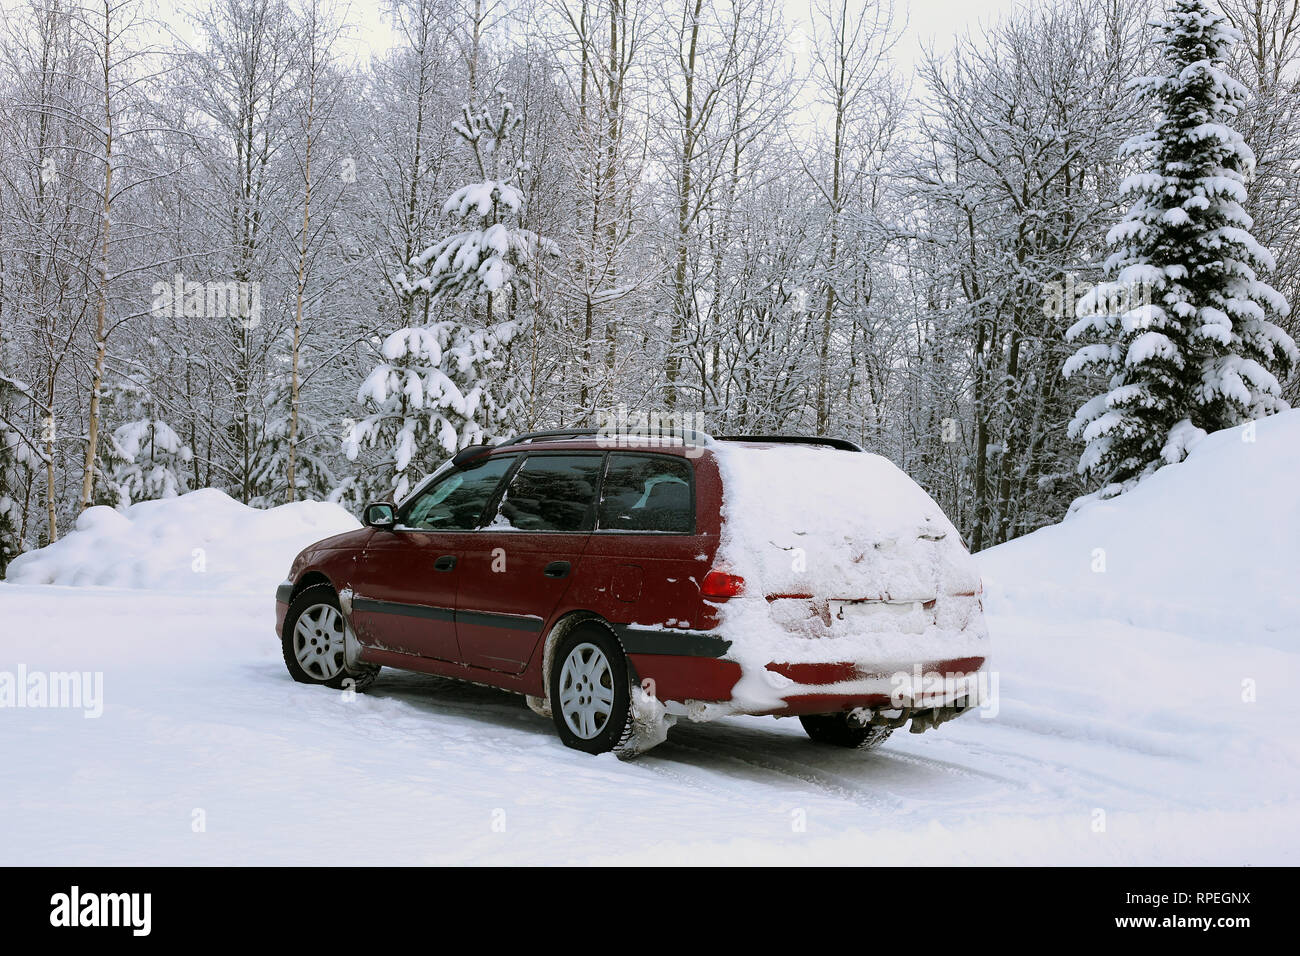 L'hiver en Europe. Vieille voiture rouge dans un parking à côté d'une forêt couverte de neige. Il y a beaucoup de nature neige autour de la voiture. Photo de jour. Banque D'Images